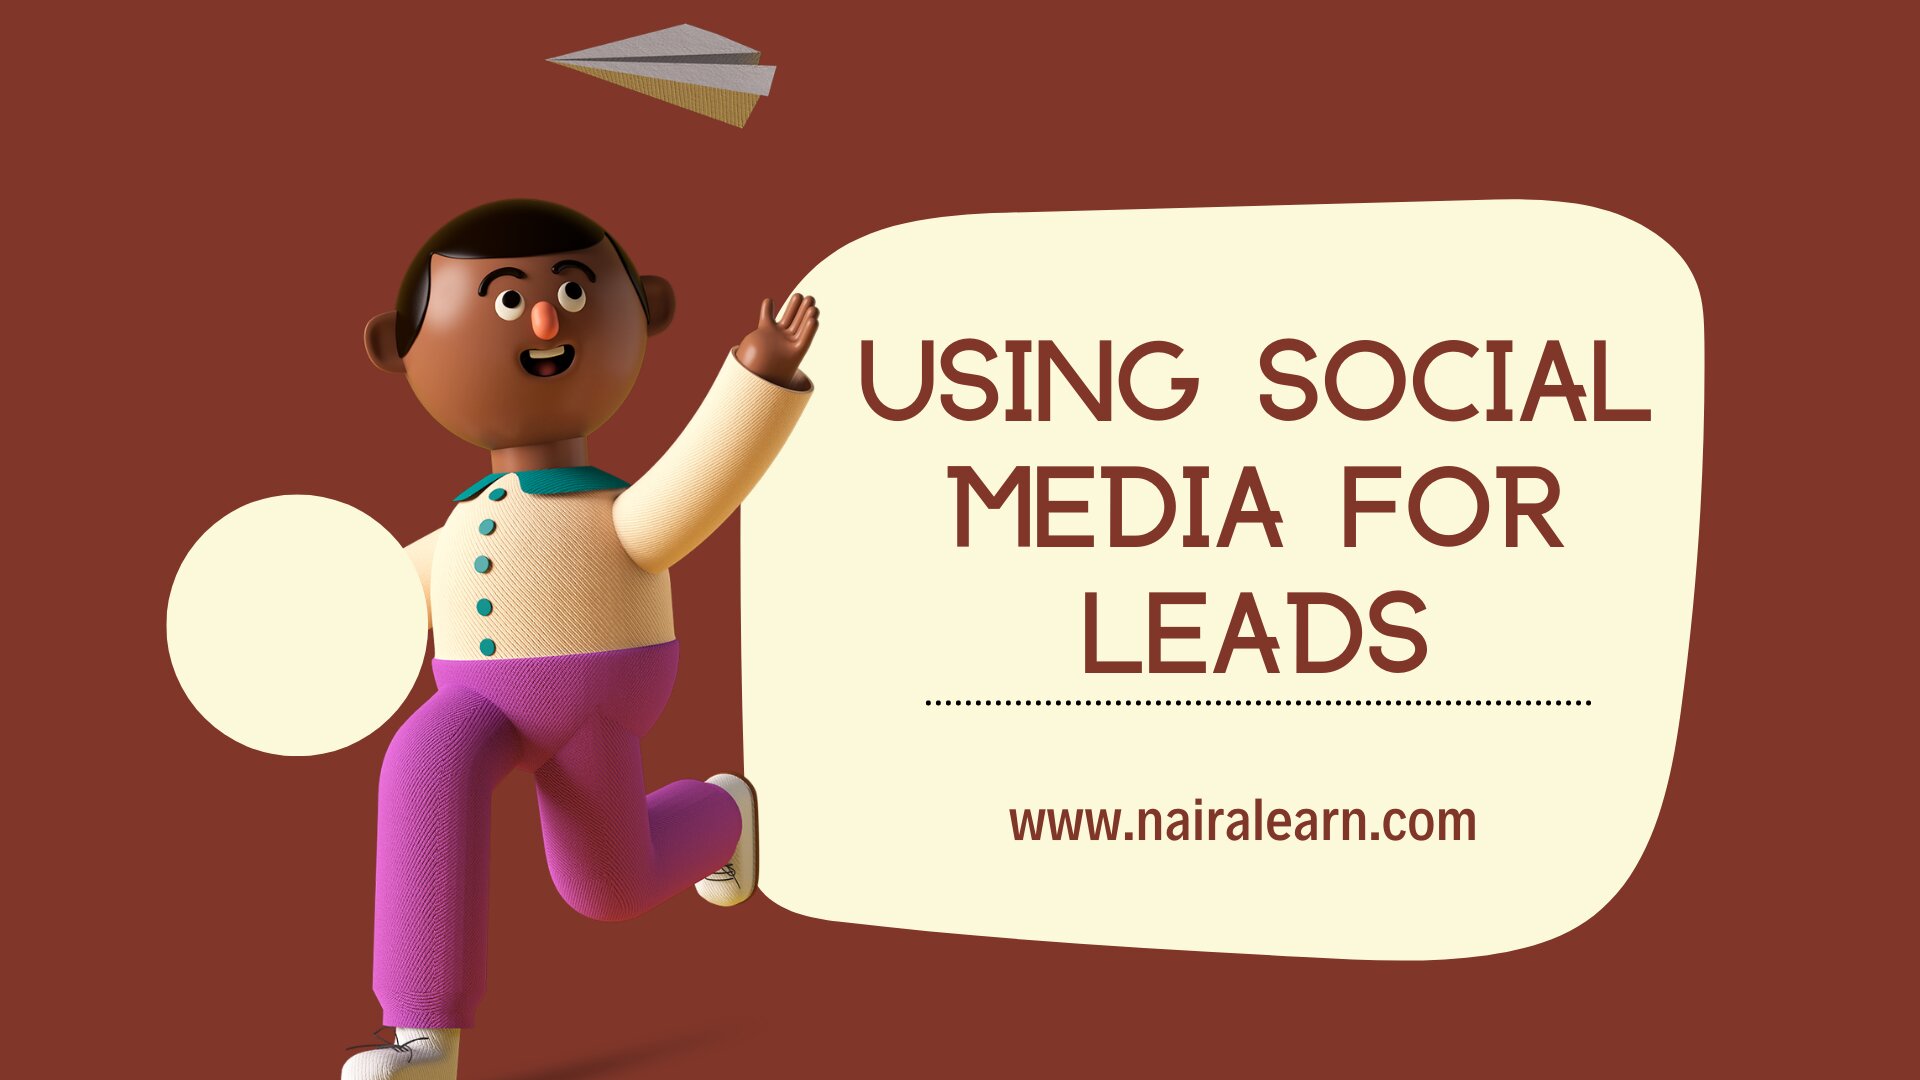 Using Social Media for leads